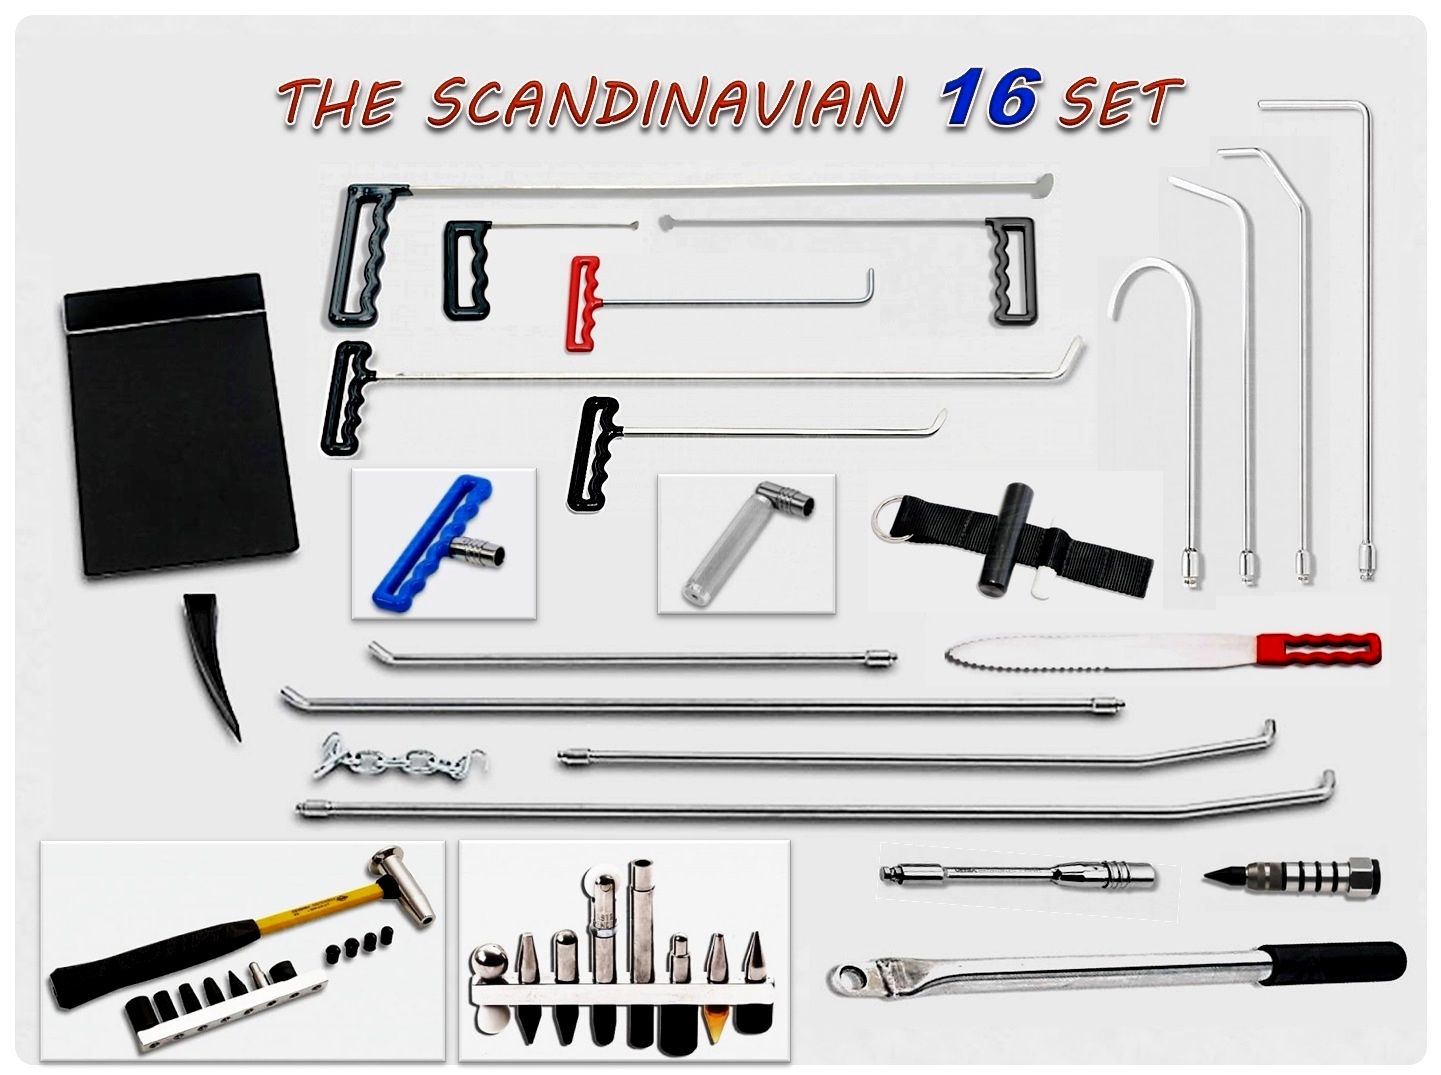 TheScandinavian16